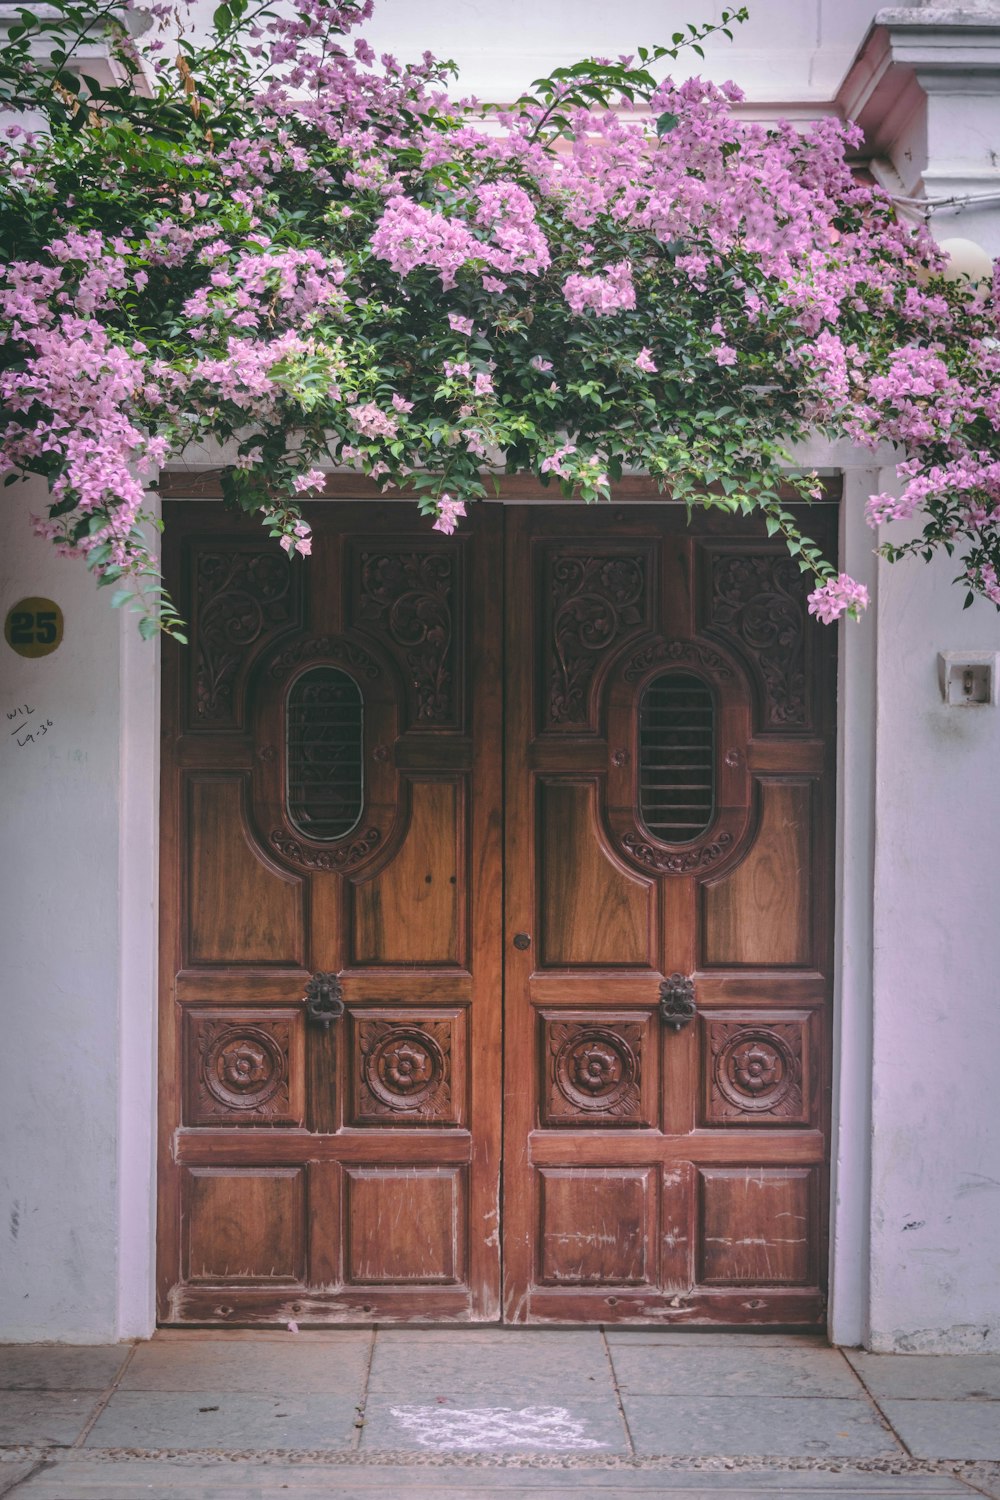 핑크 부겐빌레아 꽃 닫힌 문 위